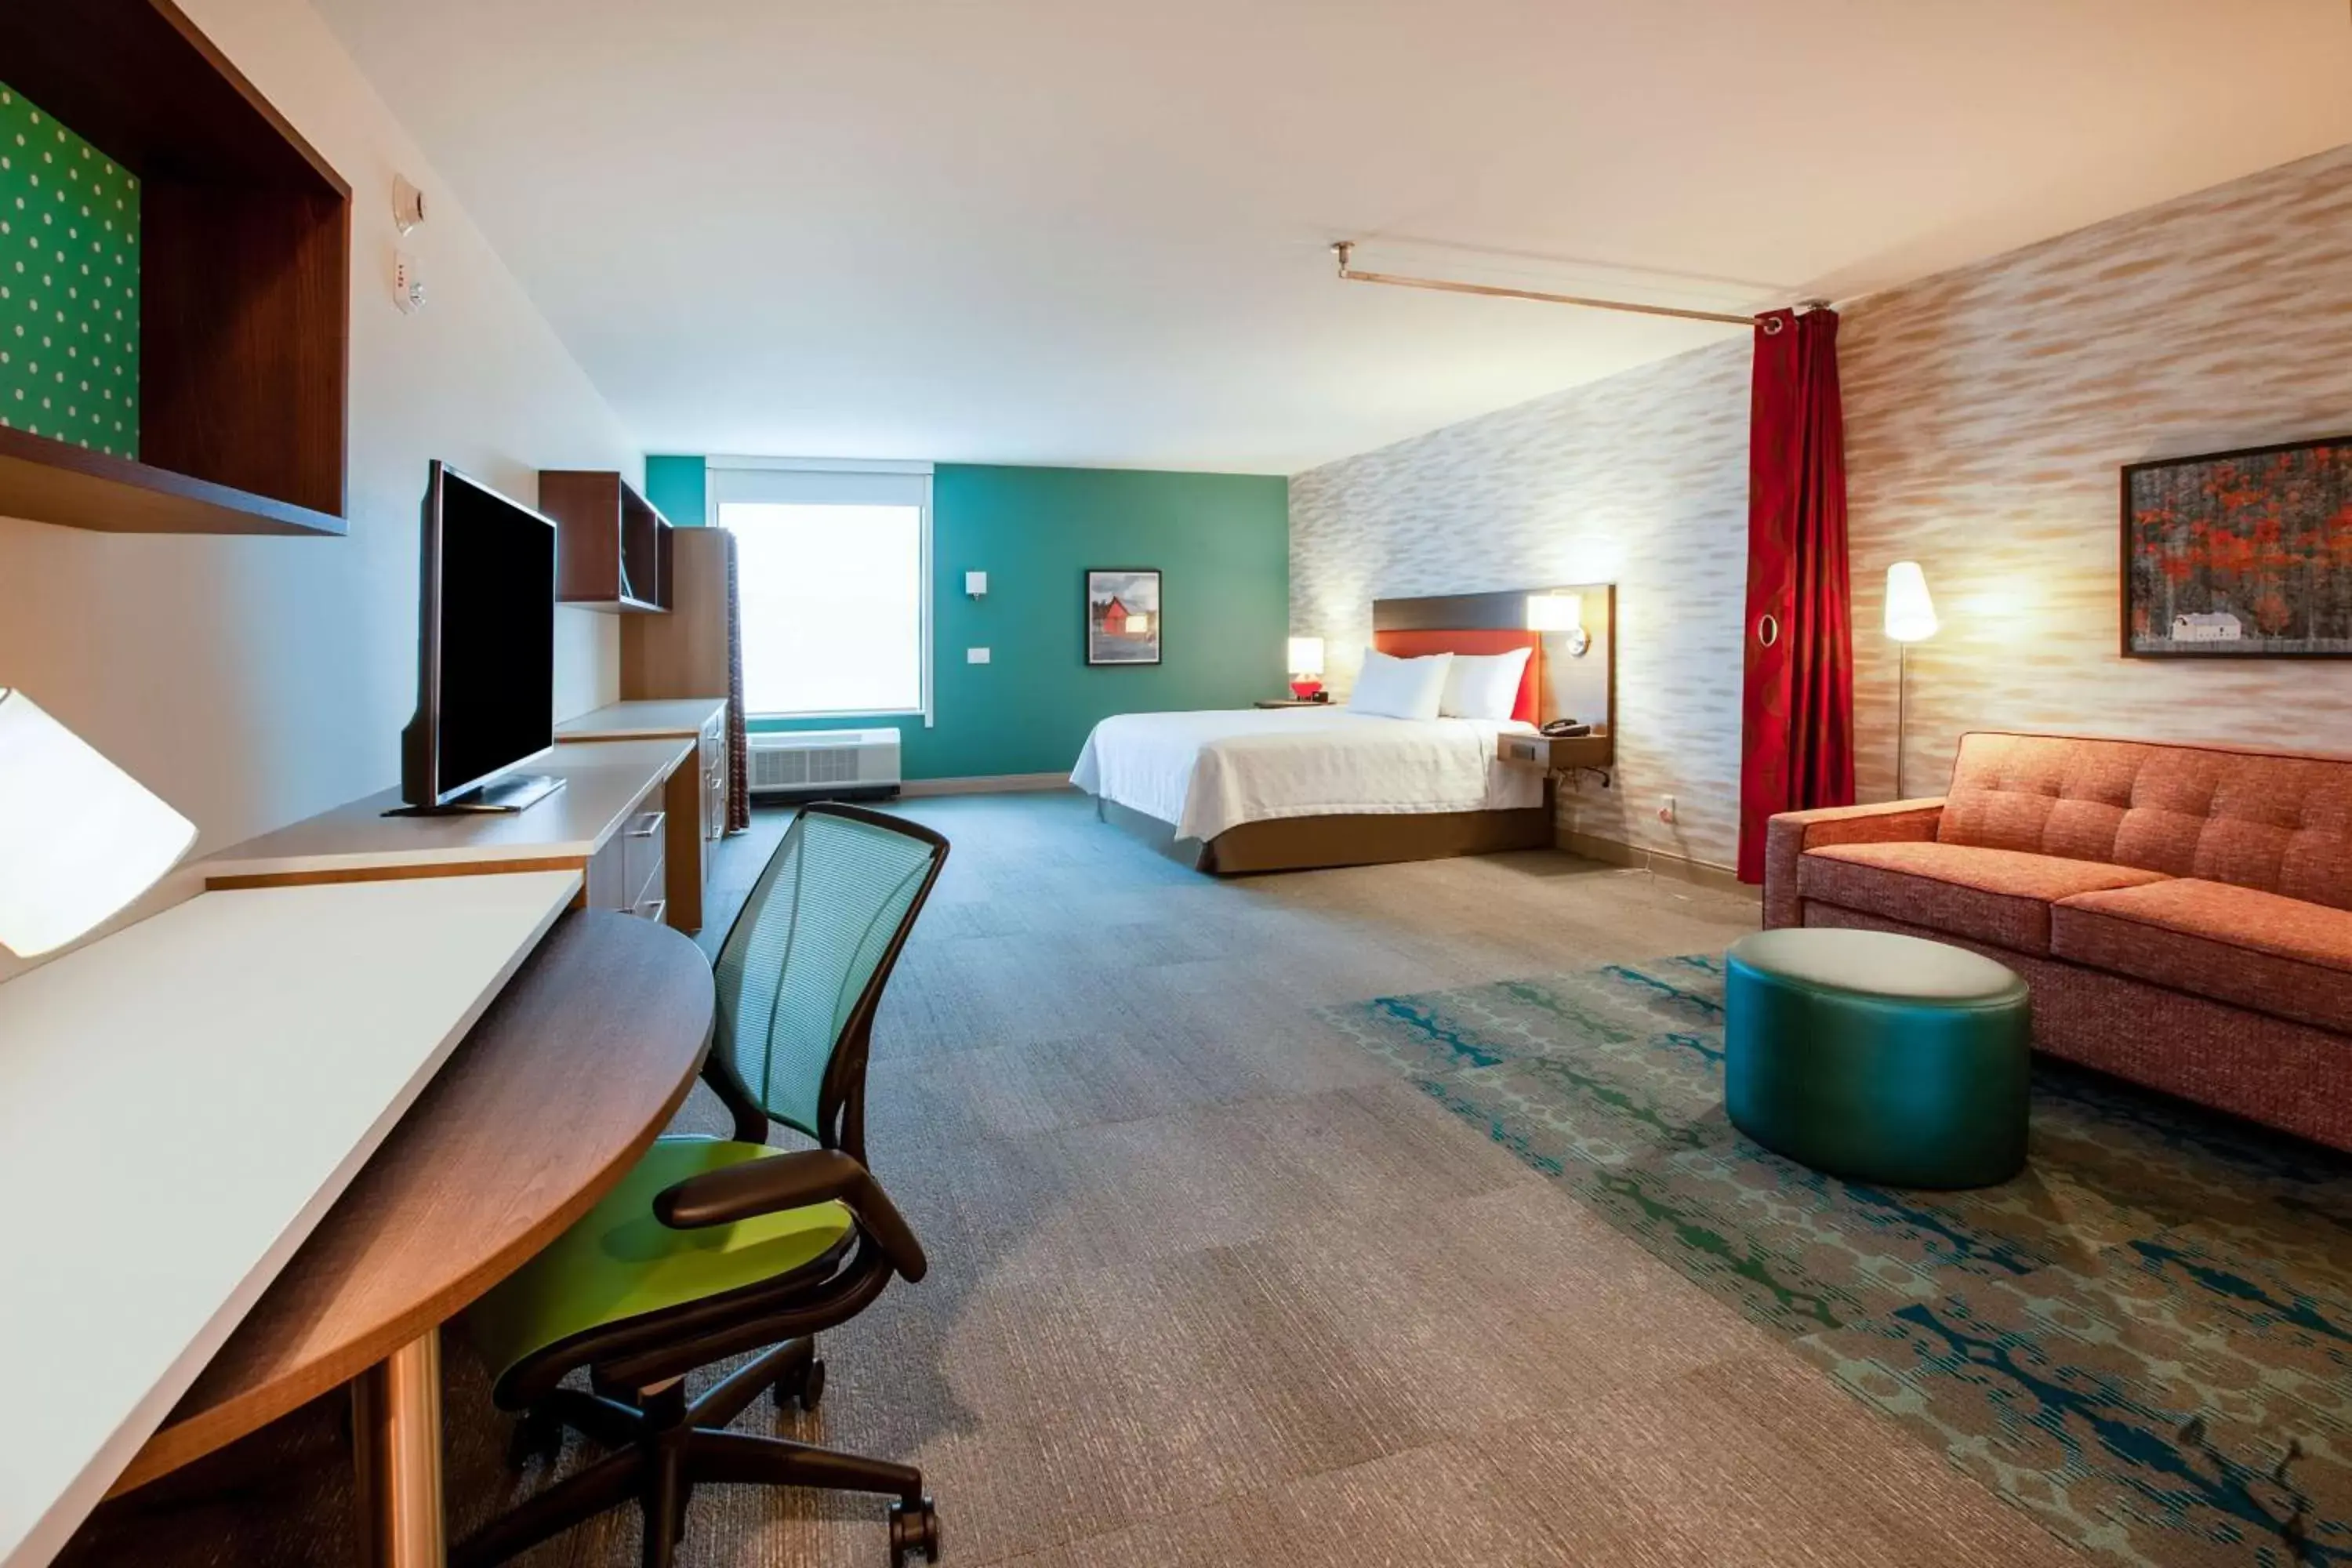 Bedroom in Home2 Suites By Hilton Lewisburg, Wv